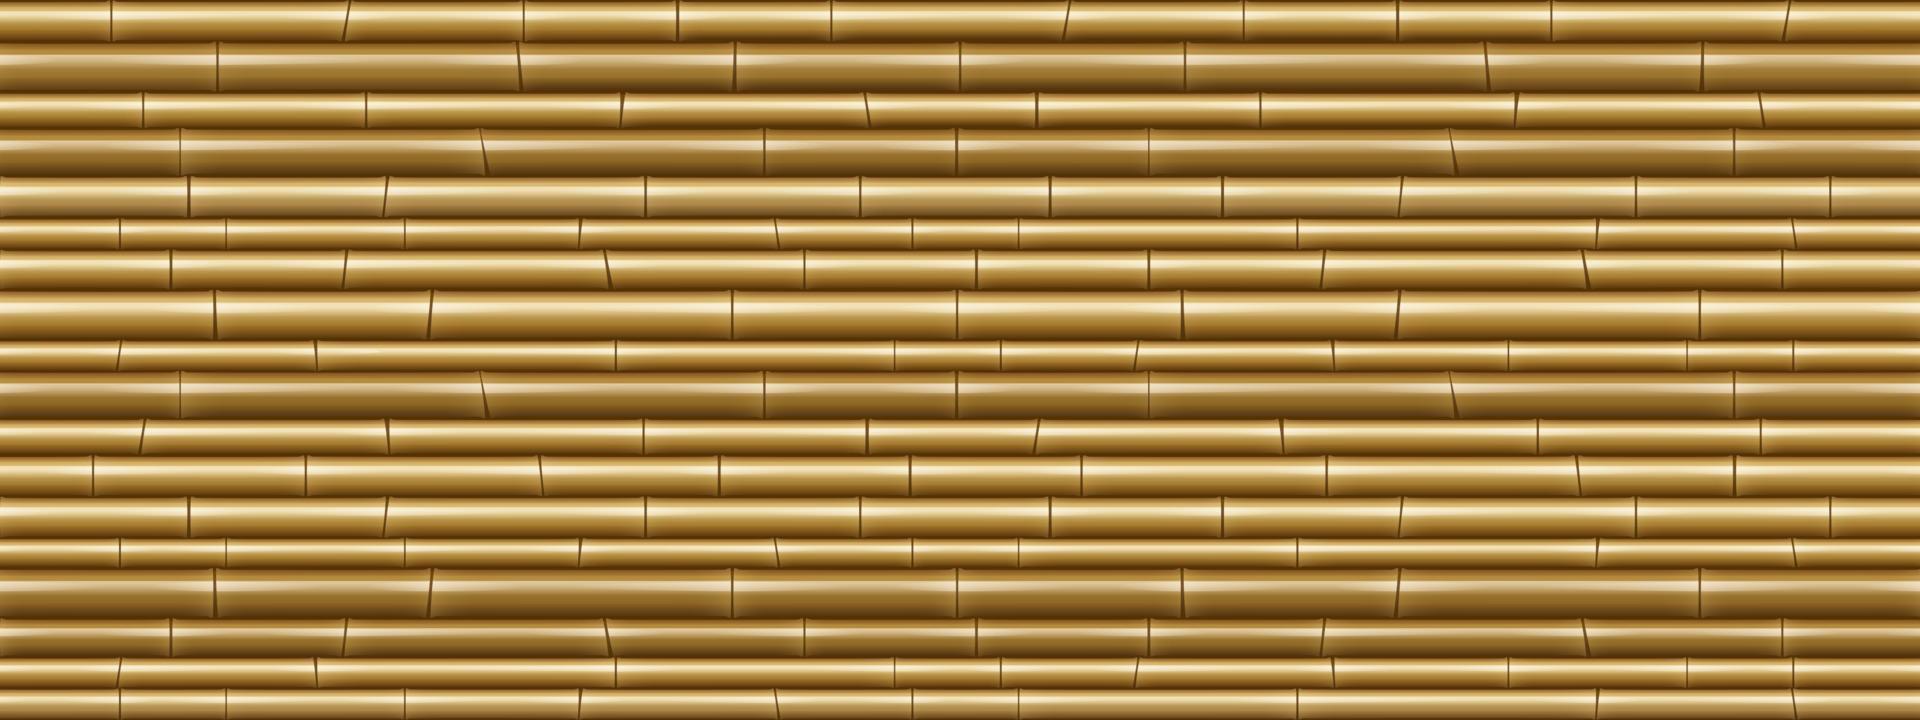 padrão sem costura de textura de parede de bambu marrom vetor